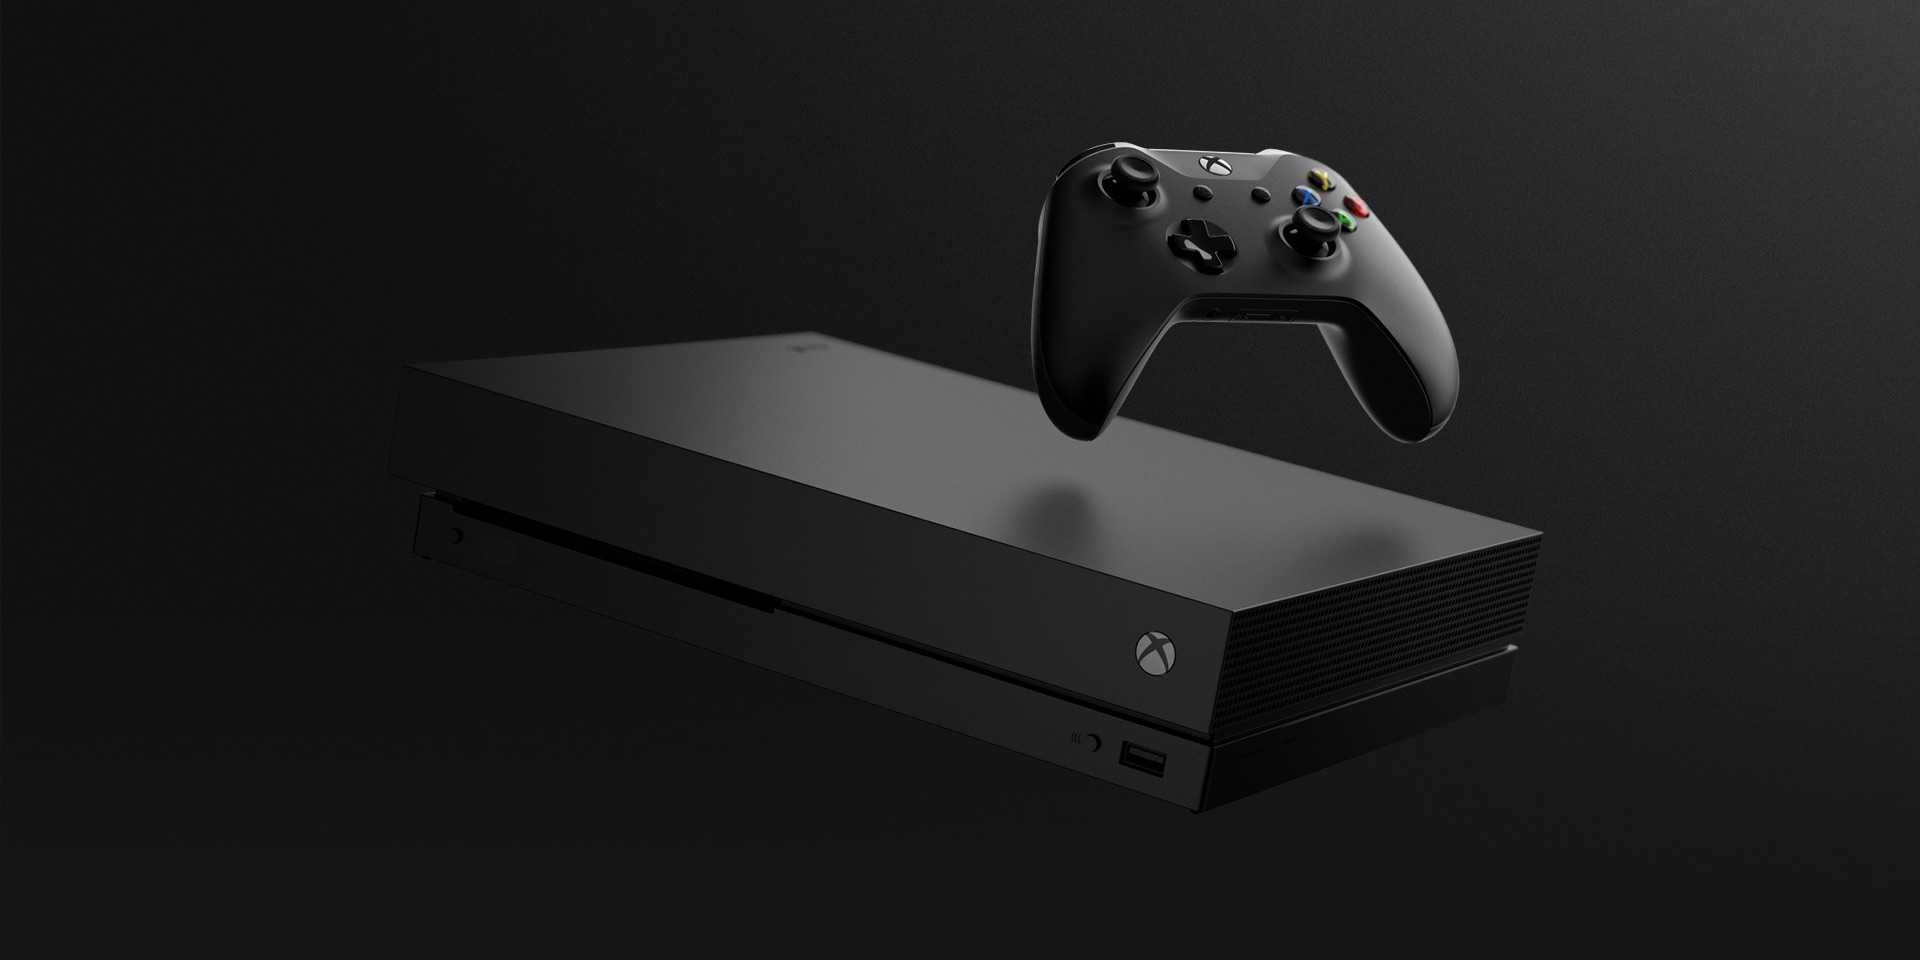 Microsoft’tan Dünyanın En güçlü Oyun Konsolu: Xbox One X